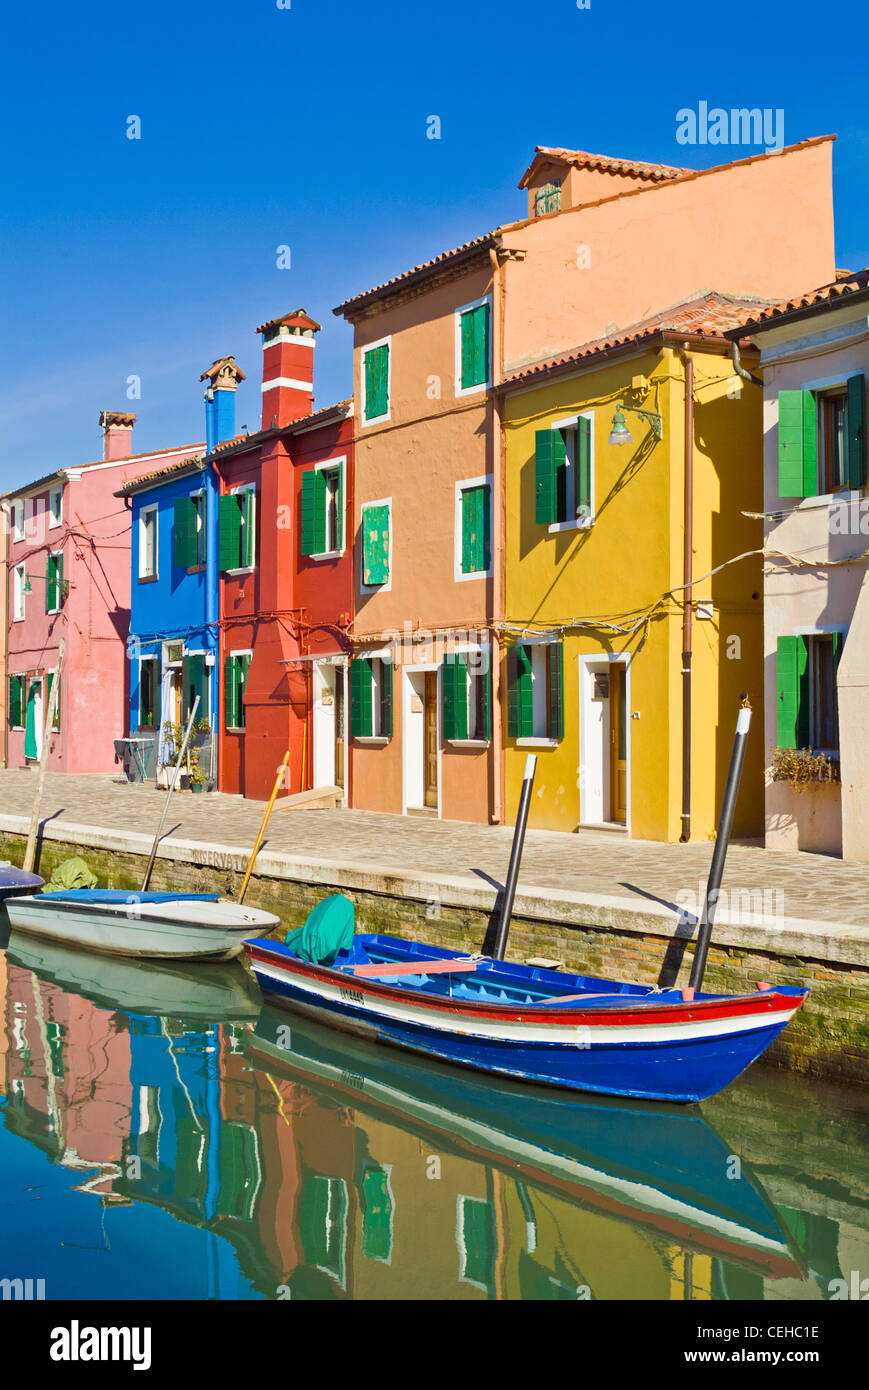 Des cottages de pêcheurs sur l'île de Burano, dans la lagune de Venise Italie Europe de l'UE Banque D'Images